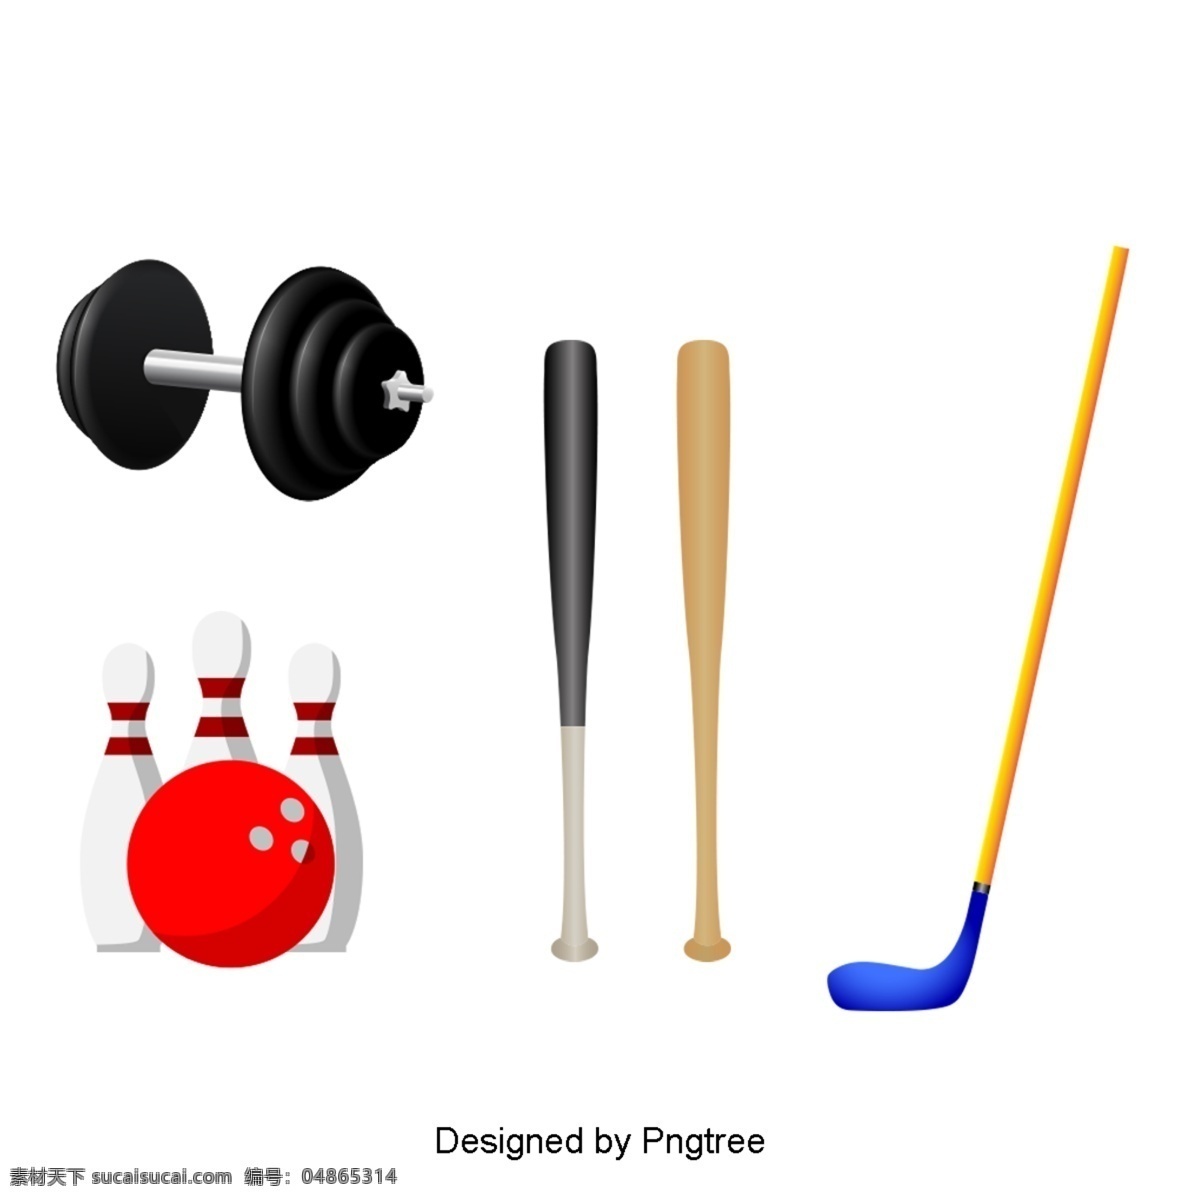 漂亮 的卡 通 手绘 平板 球运动 器材 美学 卡通 平面 球类 游戏 体育器材 健身 体育用品